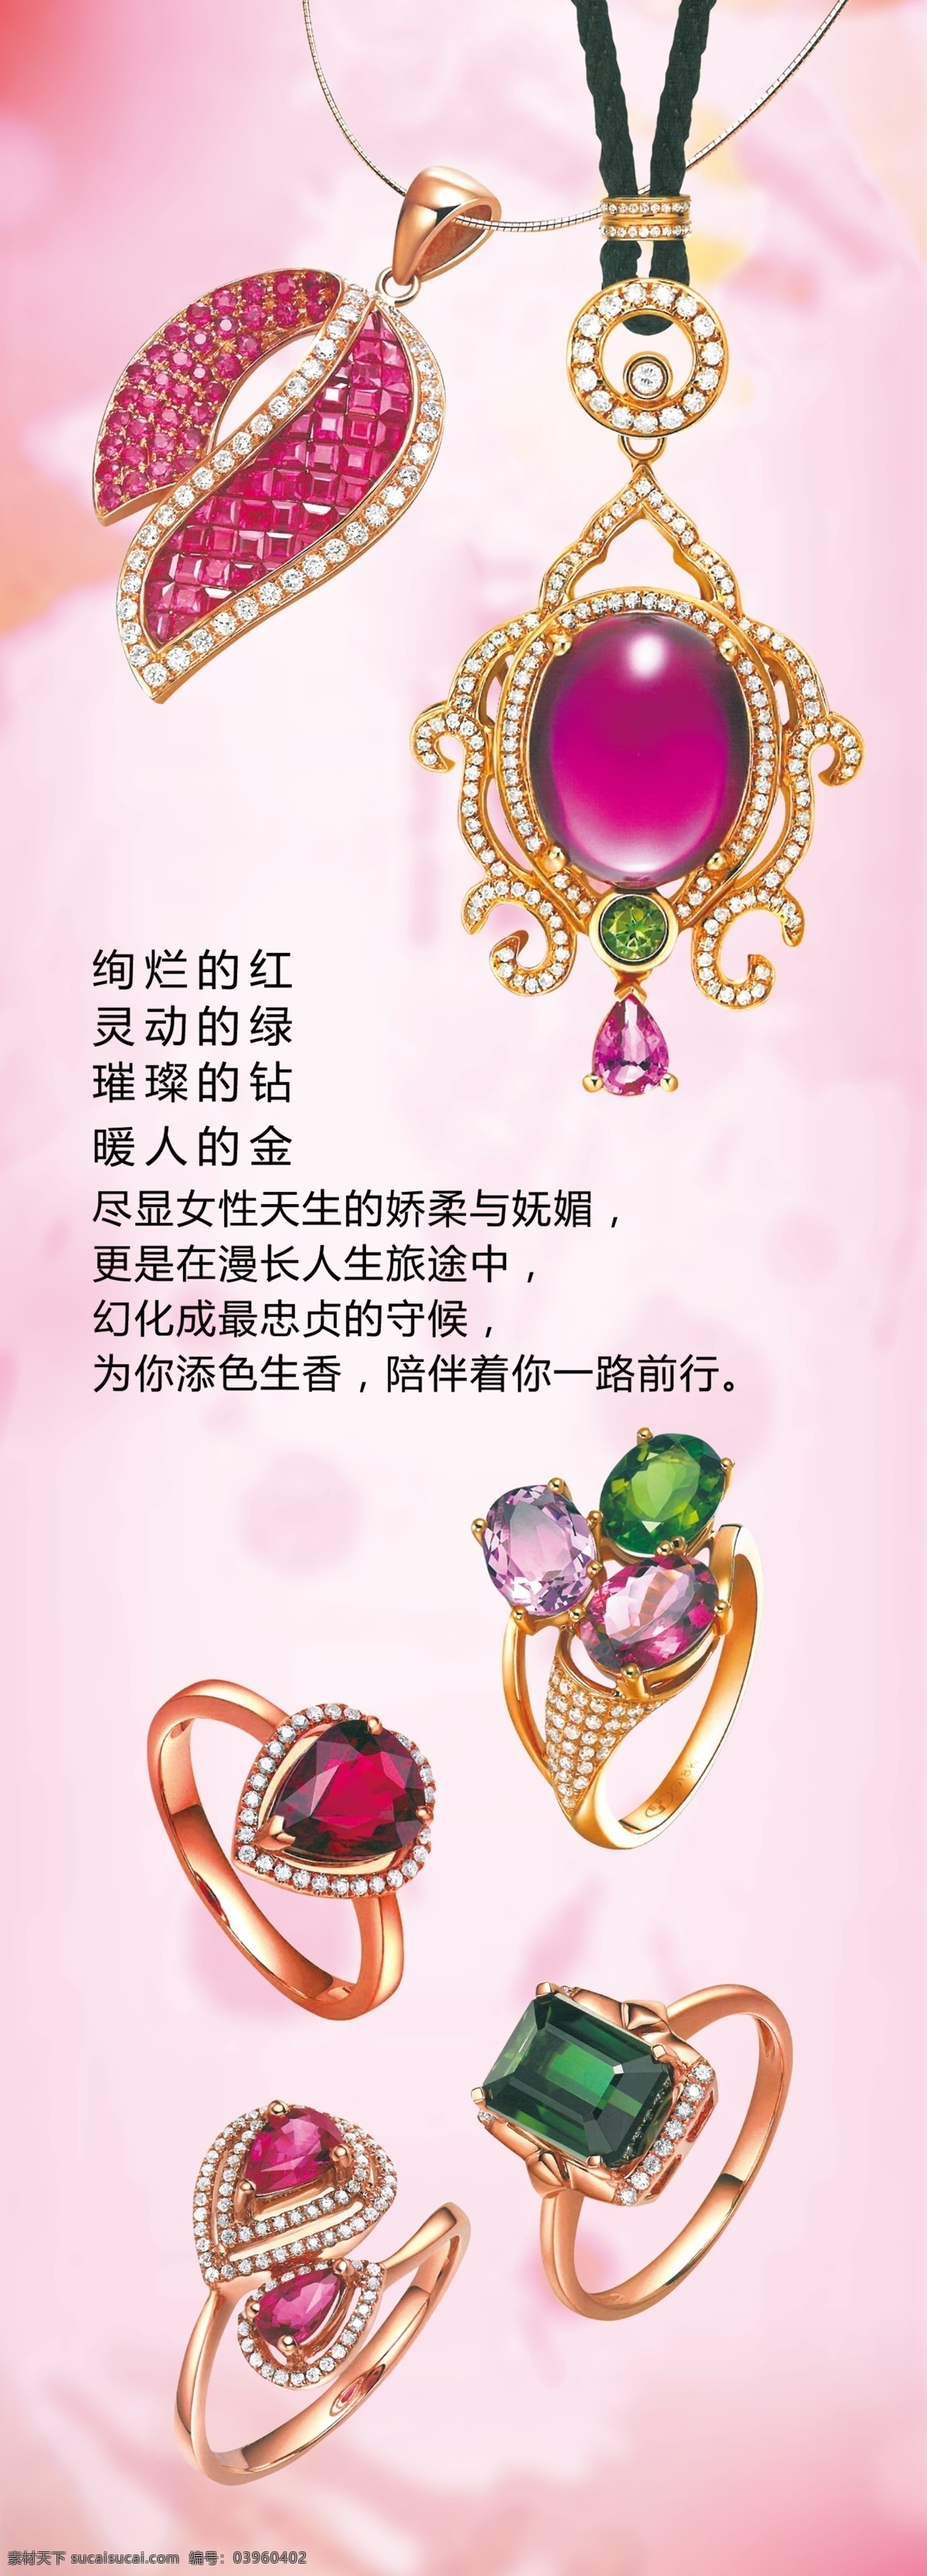 珠宝展架 粉红 珠宝 戒指 钻戒 钻石 项链 宝石 翡翠 展板模板 广告设计模板 源文件